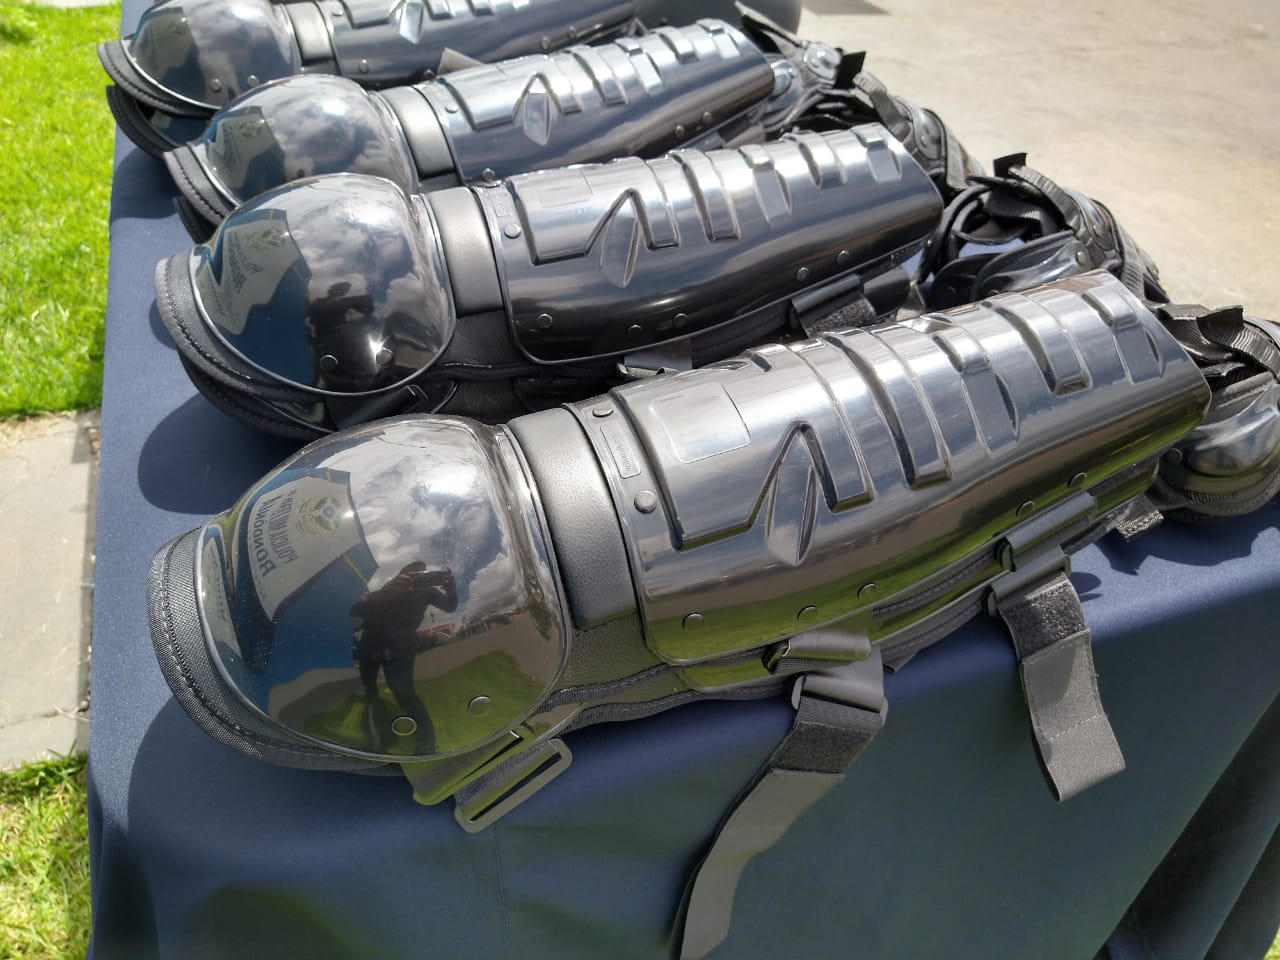 Deputado Alex Silva entrega equipamentos de segurança para Força Tática da Polícia Militar - News Rondônia